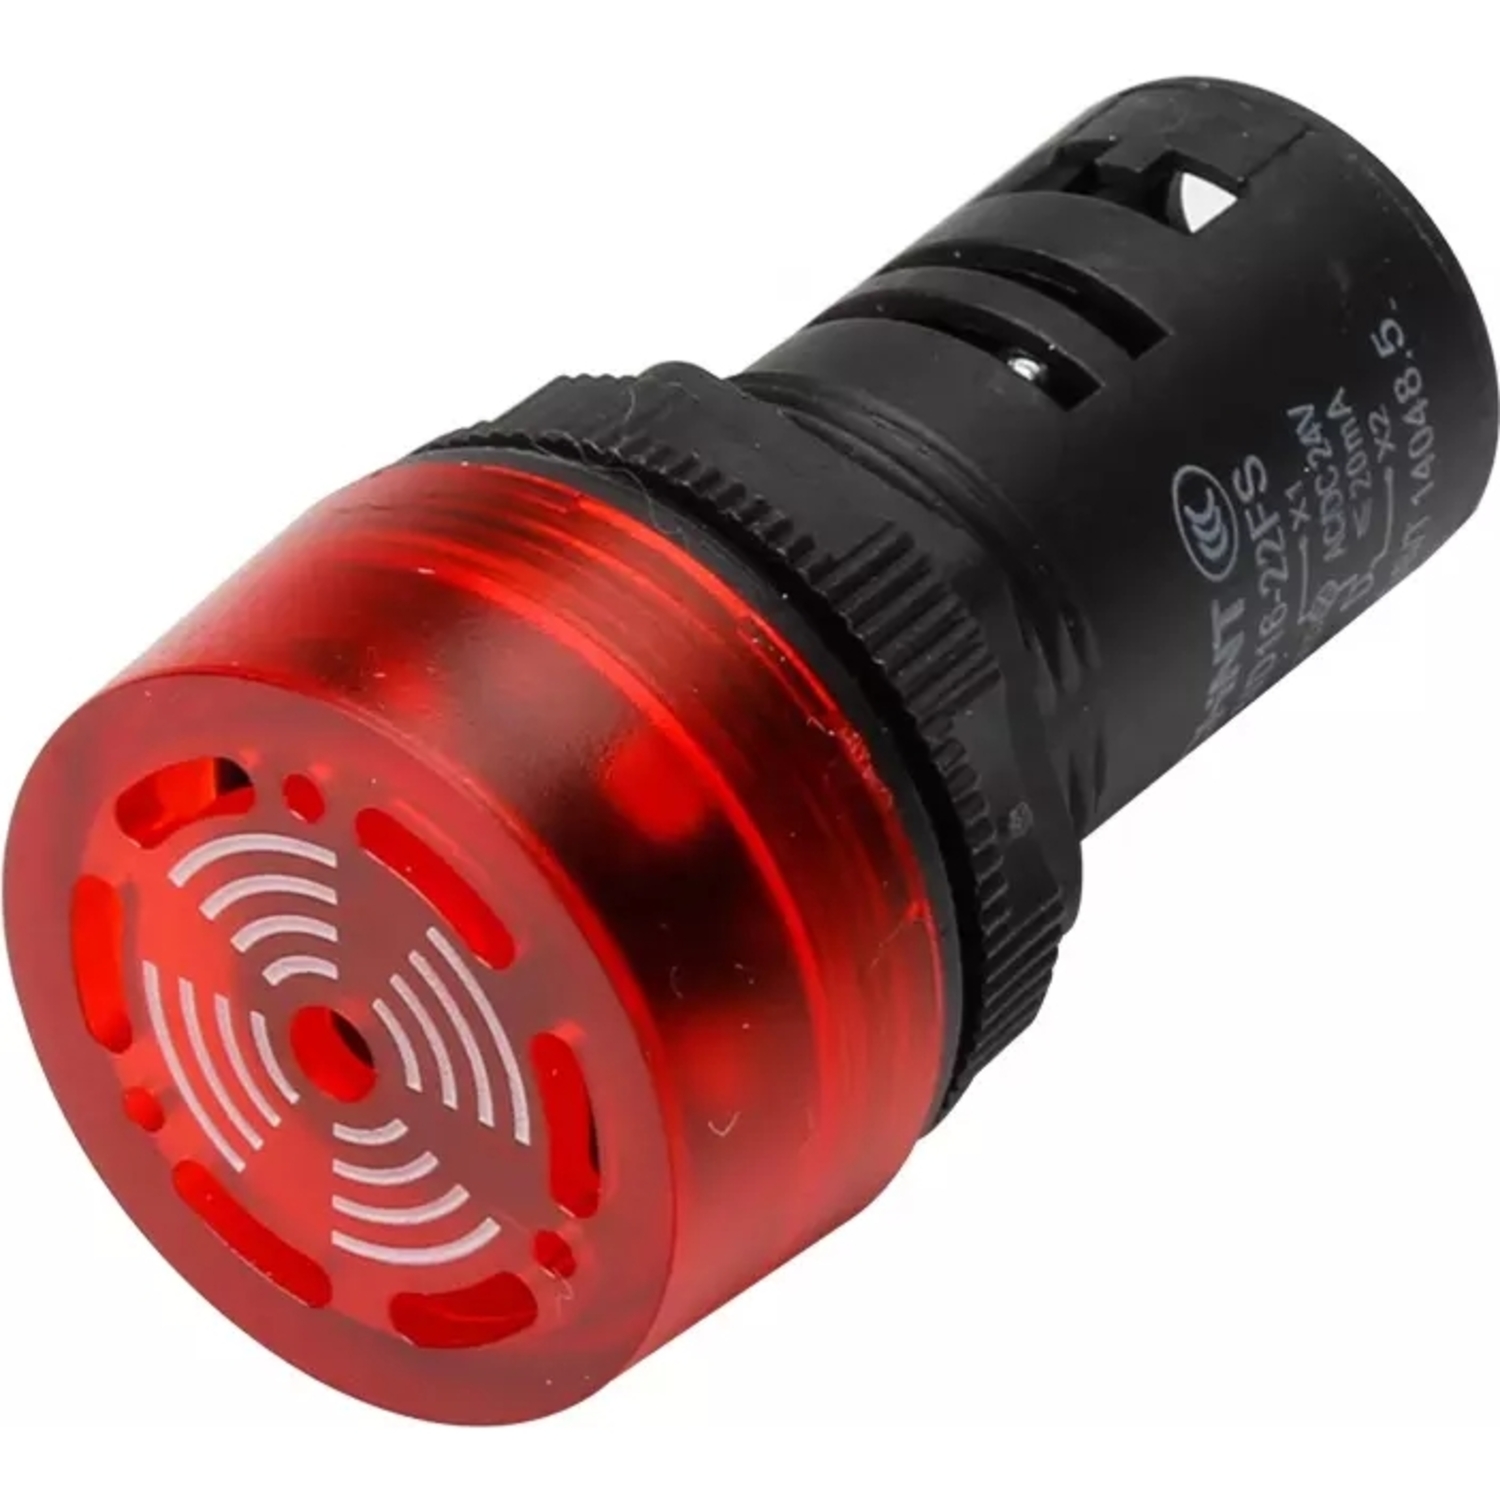 Сигнализатор звуковой ND16-22L Φ22 мм красный АС220В (R)